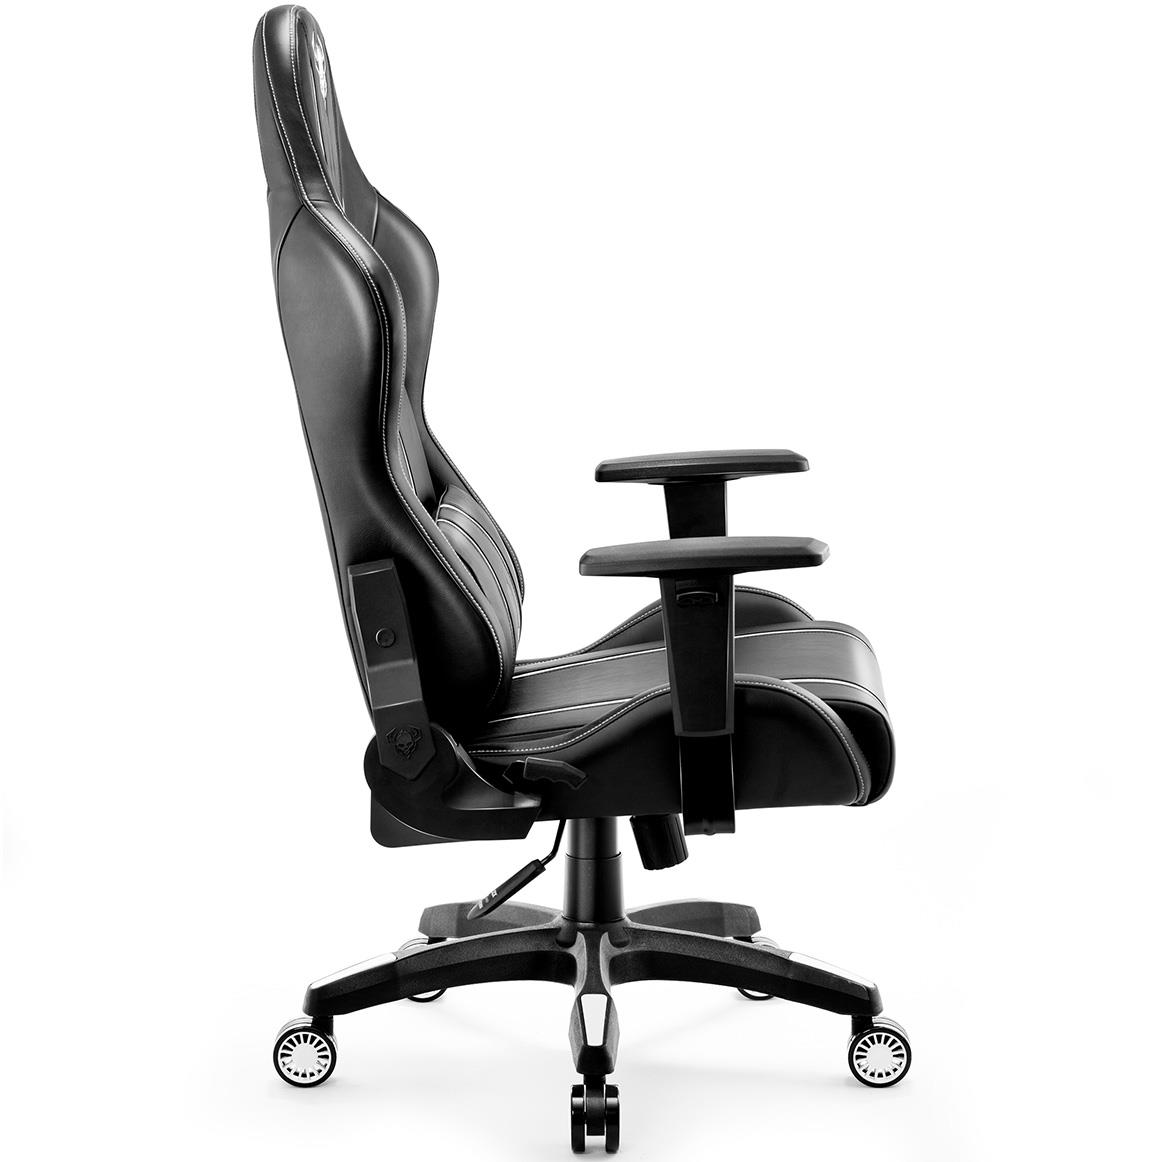 King Diablo X-One 2.0 kancelarijska stolica 72x54x134 cm crno bela